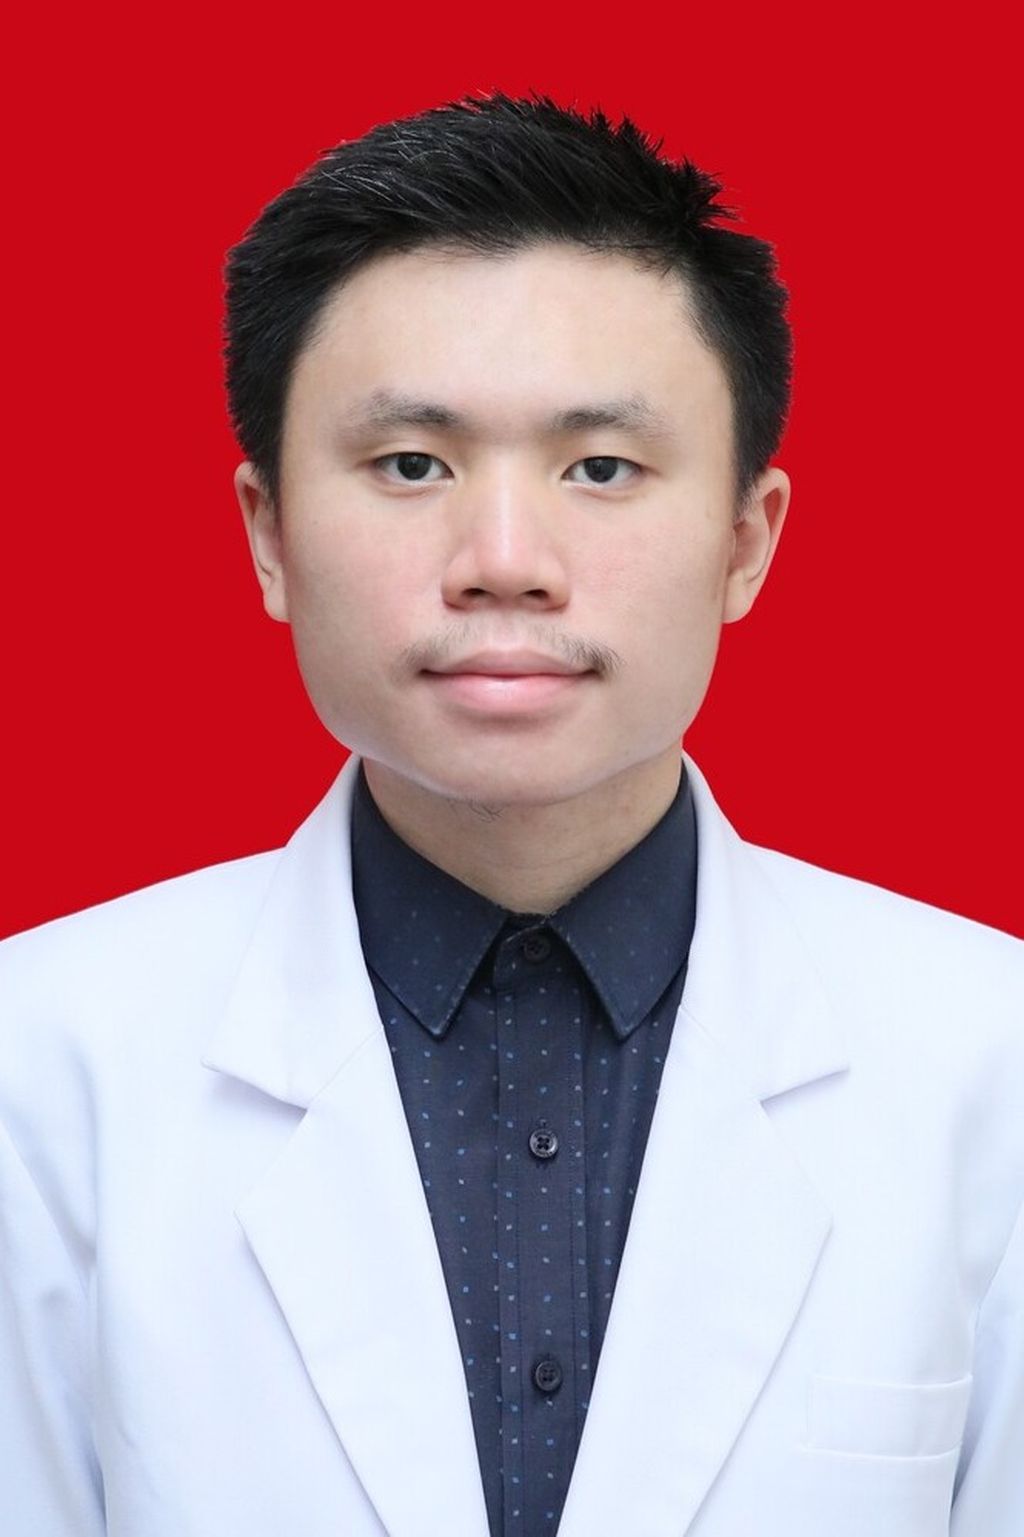 Mahasiswa Fakultas Kedokteran dan Ilmu Kesehatan Universitas Atma Jaya Jakarta, Eric Ricardo Yonatan.